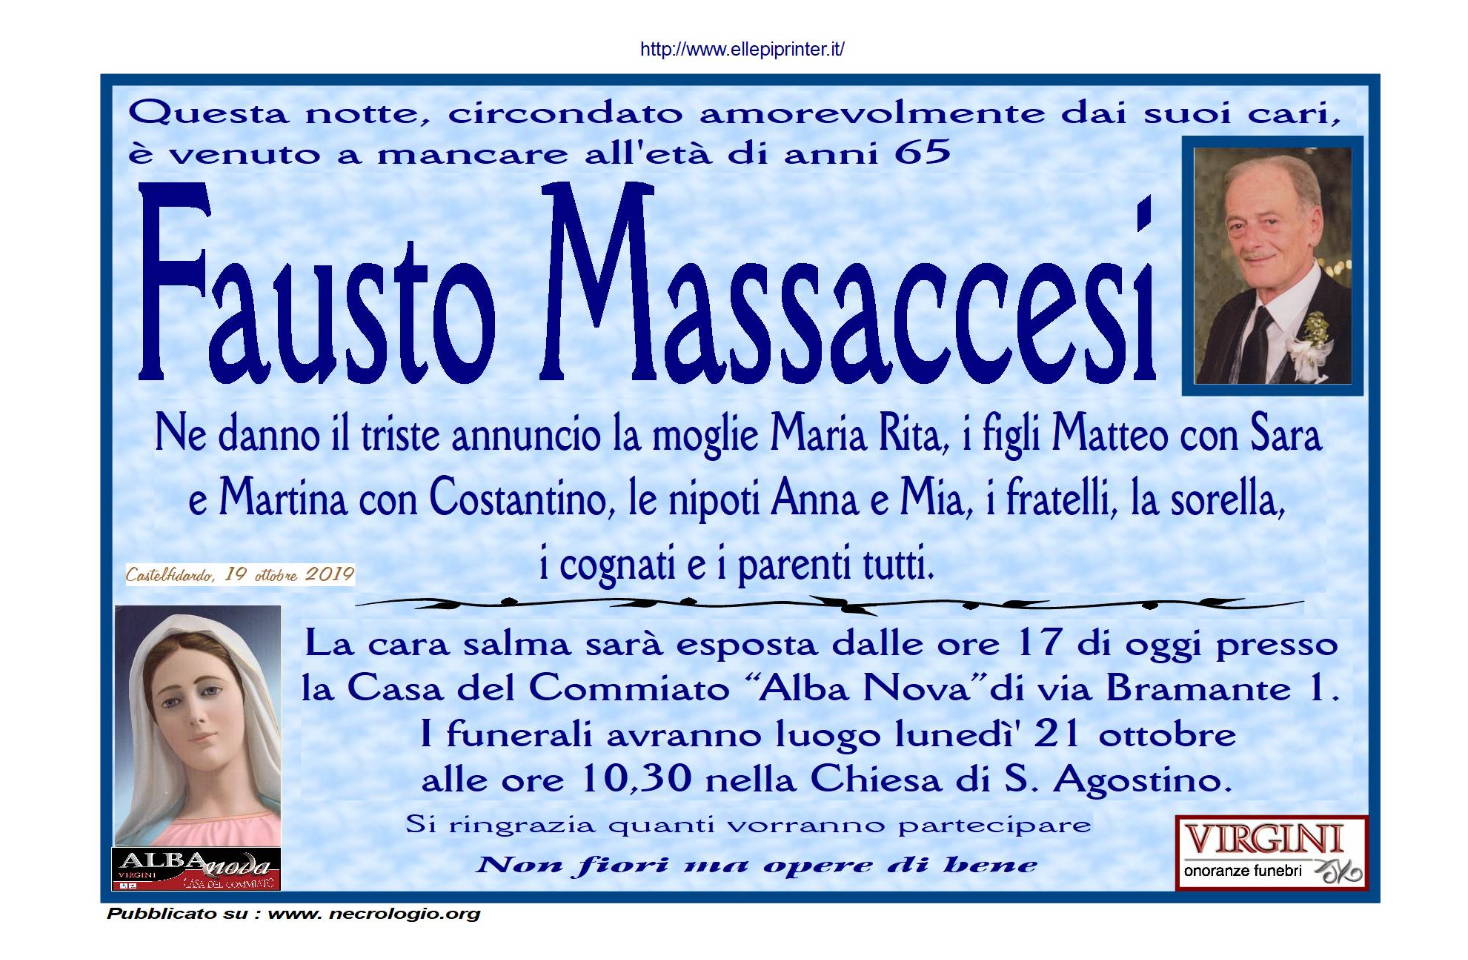 Fausto Massaccesi